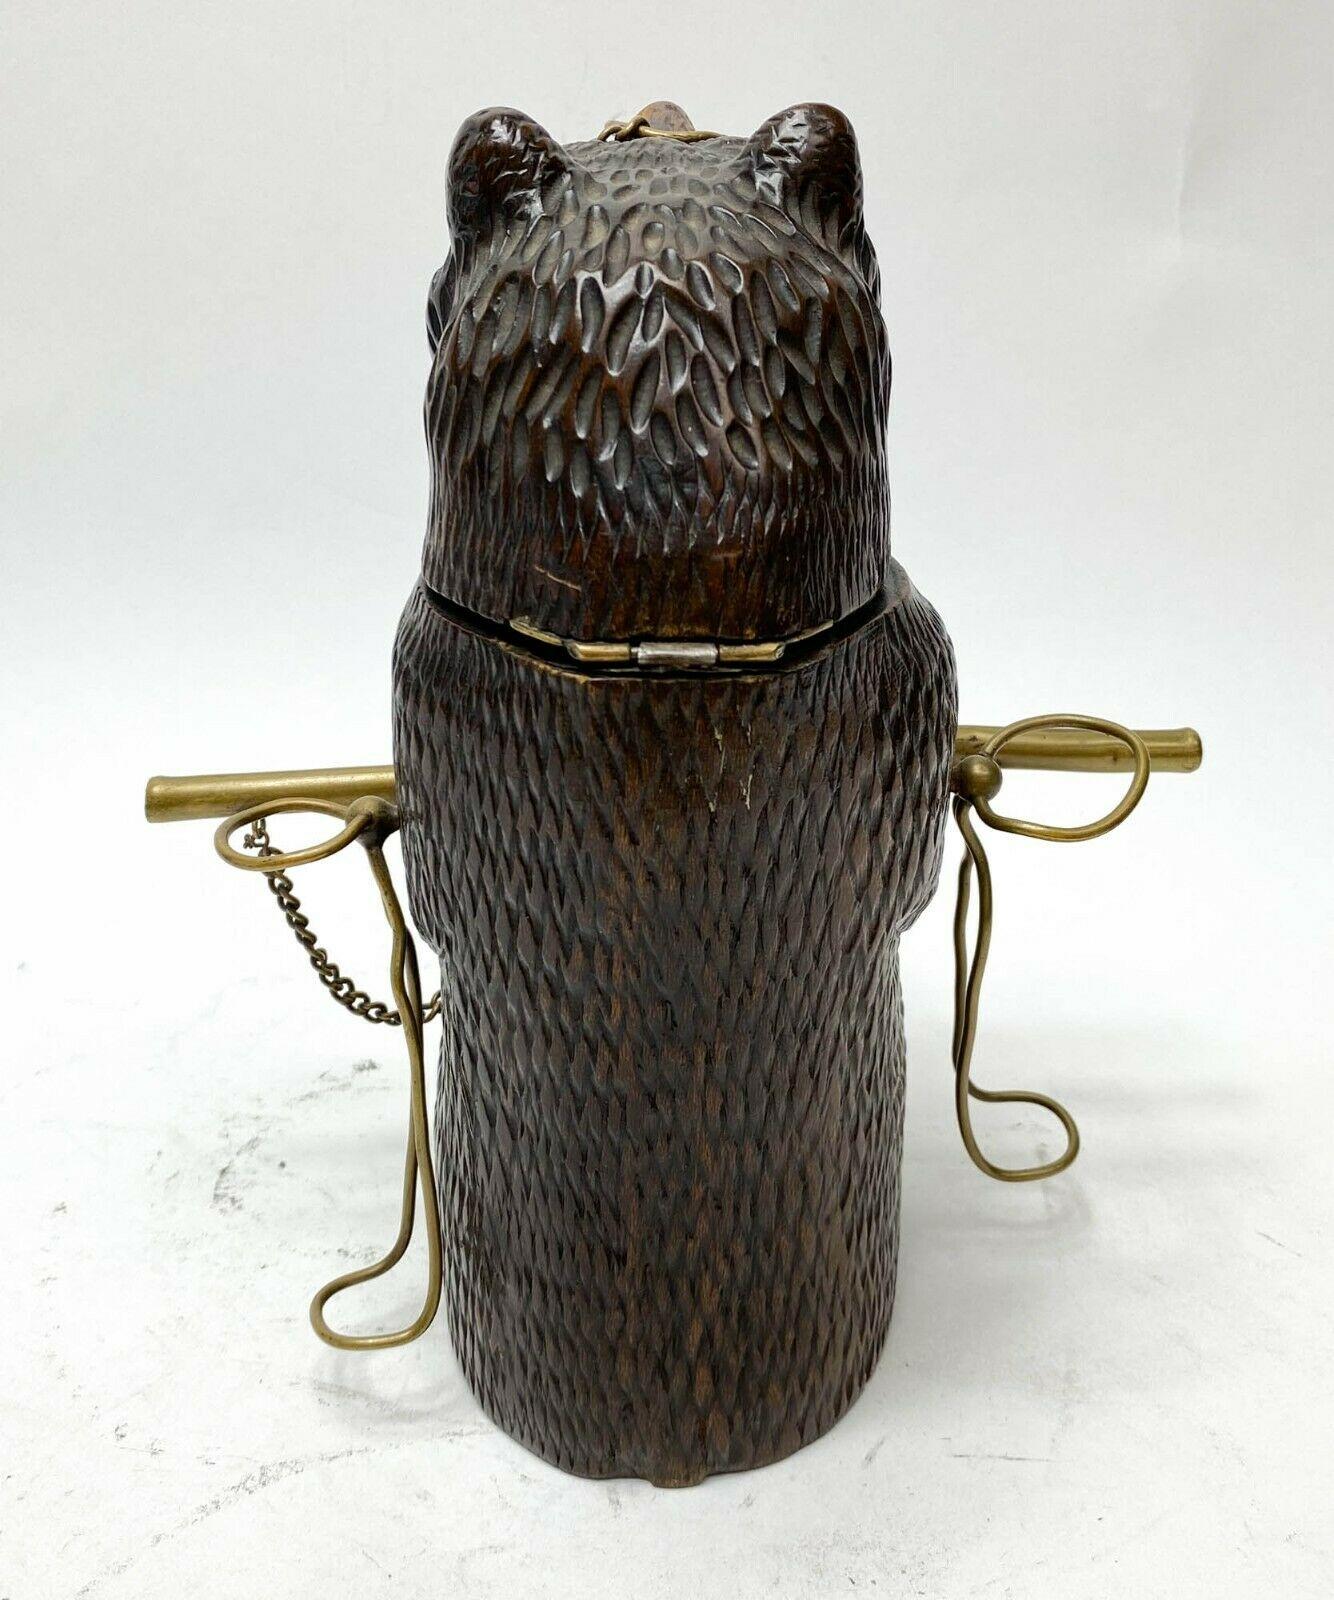 Support à tabac et à pipe en forme d'ours sculpté à la main, c1900

Stand modélisé comme un support à pipe et à tabac pour ours avec 3 supports pour pipes. Le conteneur d'ouverture de la tête pour le tabac. Probablement un ours de la forêt noire.